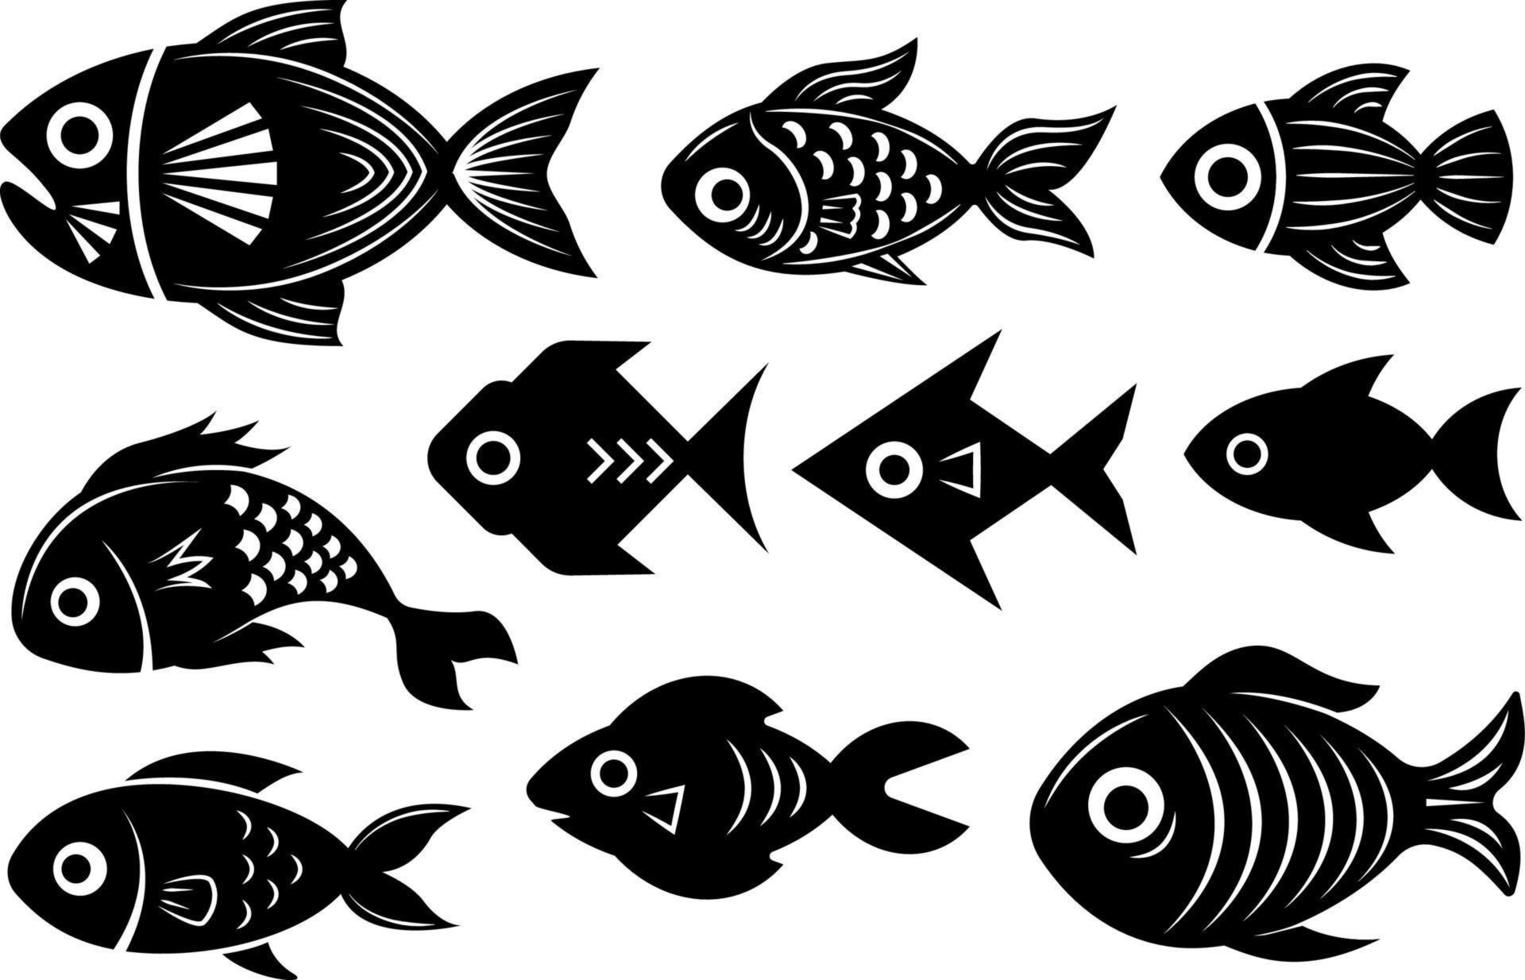 schwarz-weiße Fischillustrationen, Sammlung verschiedener Fische, abstrakte stilisierte Unterwasserlebewesen einzeln auf weißem Hintergrund. vektor